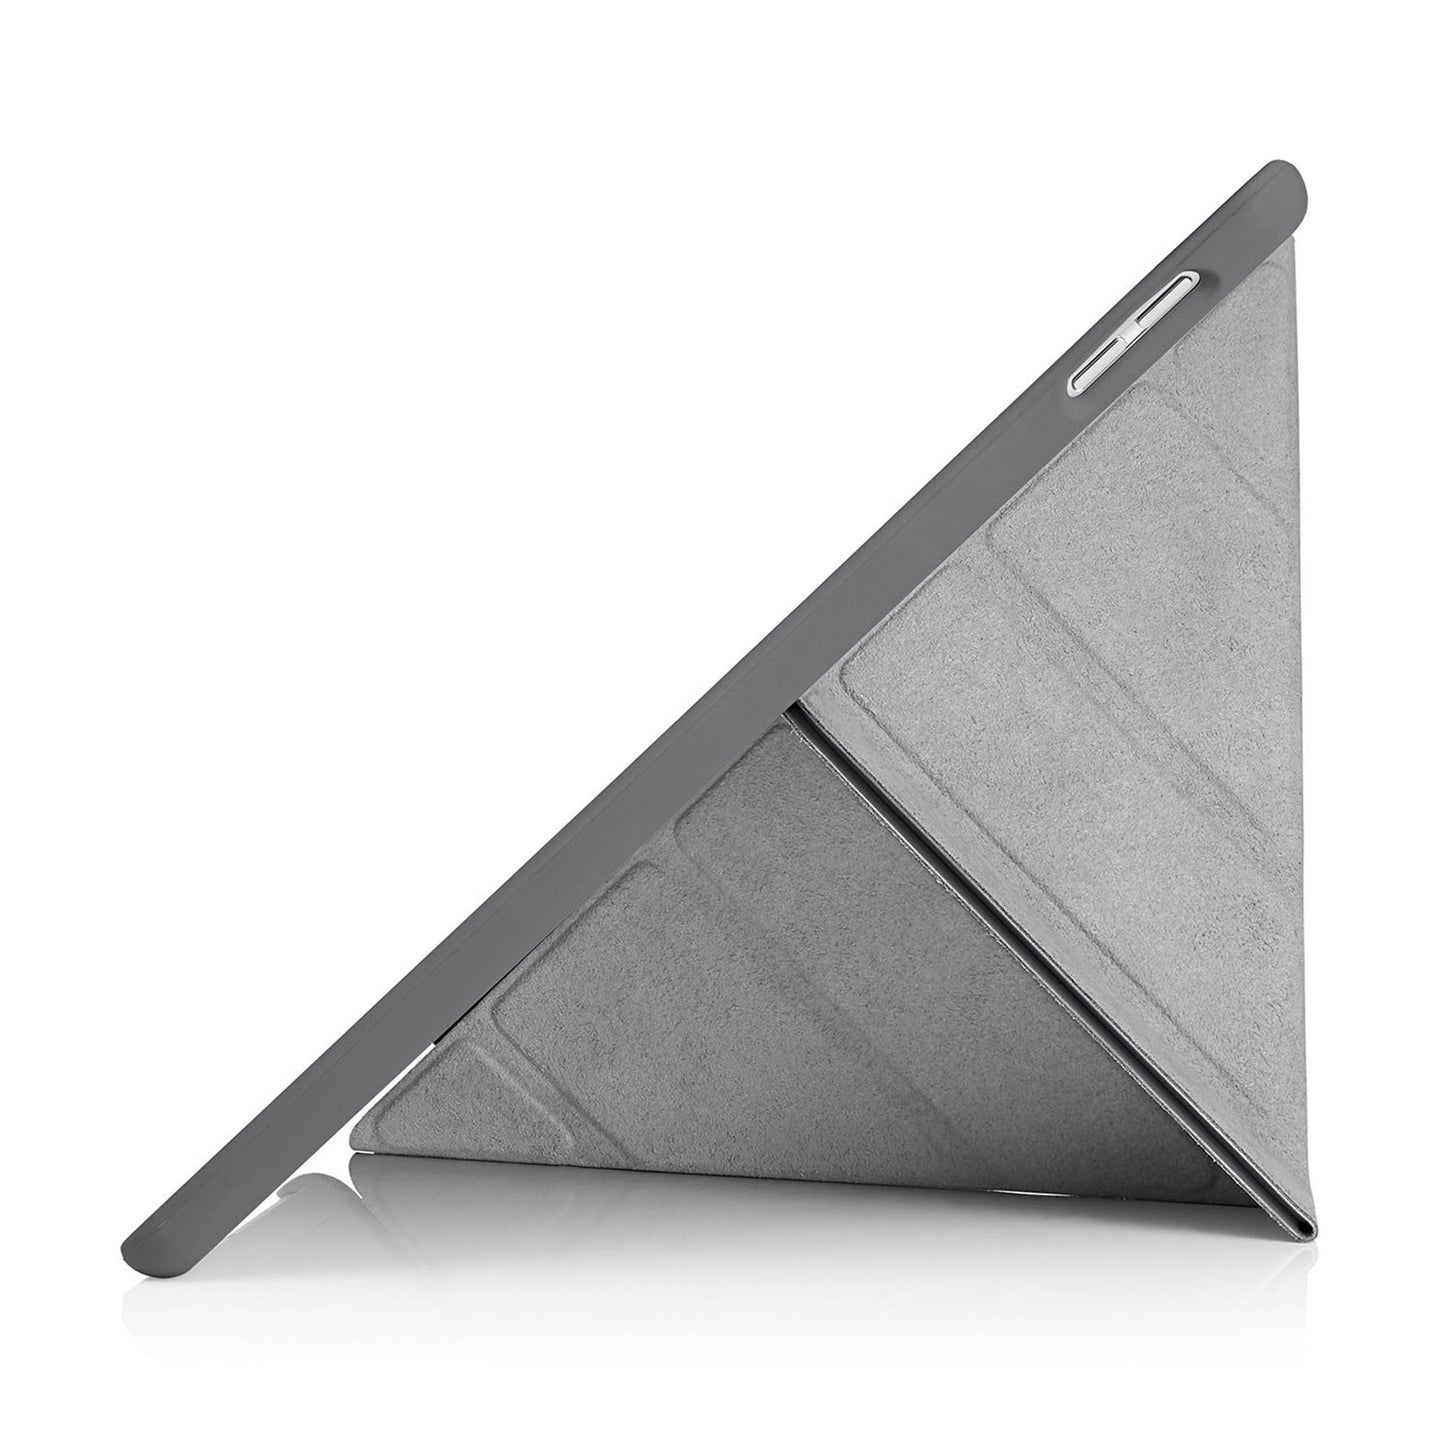 PIPETTO Origami Case for iPad 7th-9th Gen (2019-2021) - Dark Grey